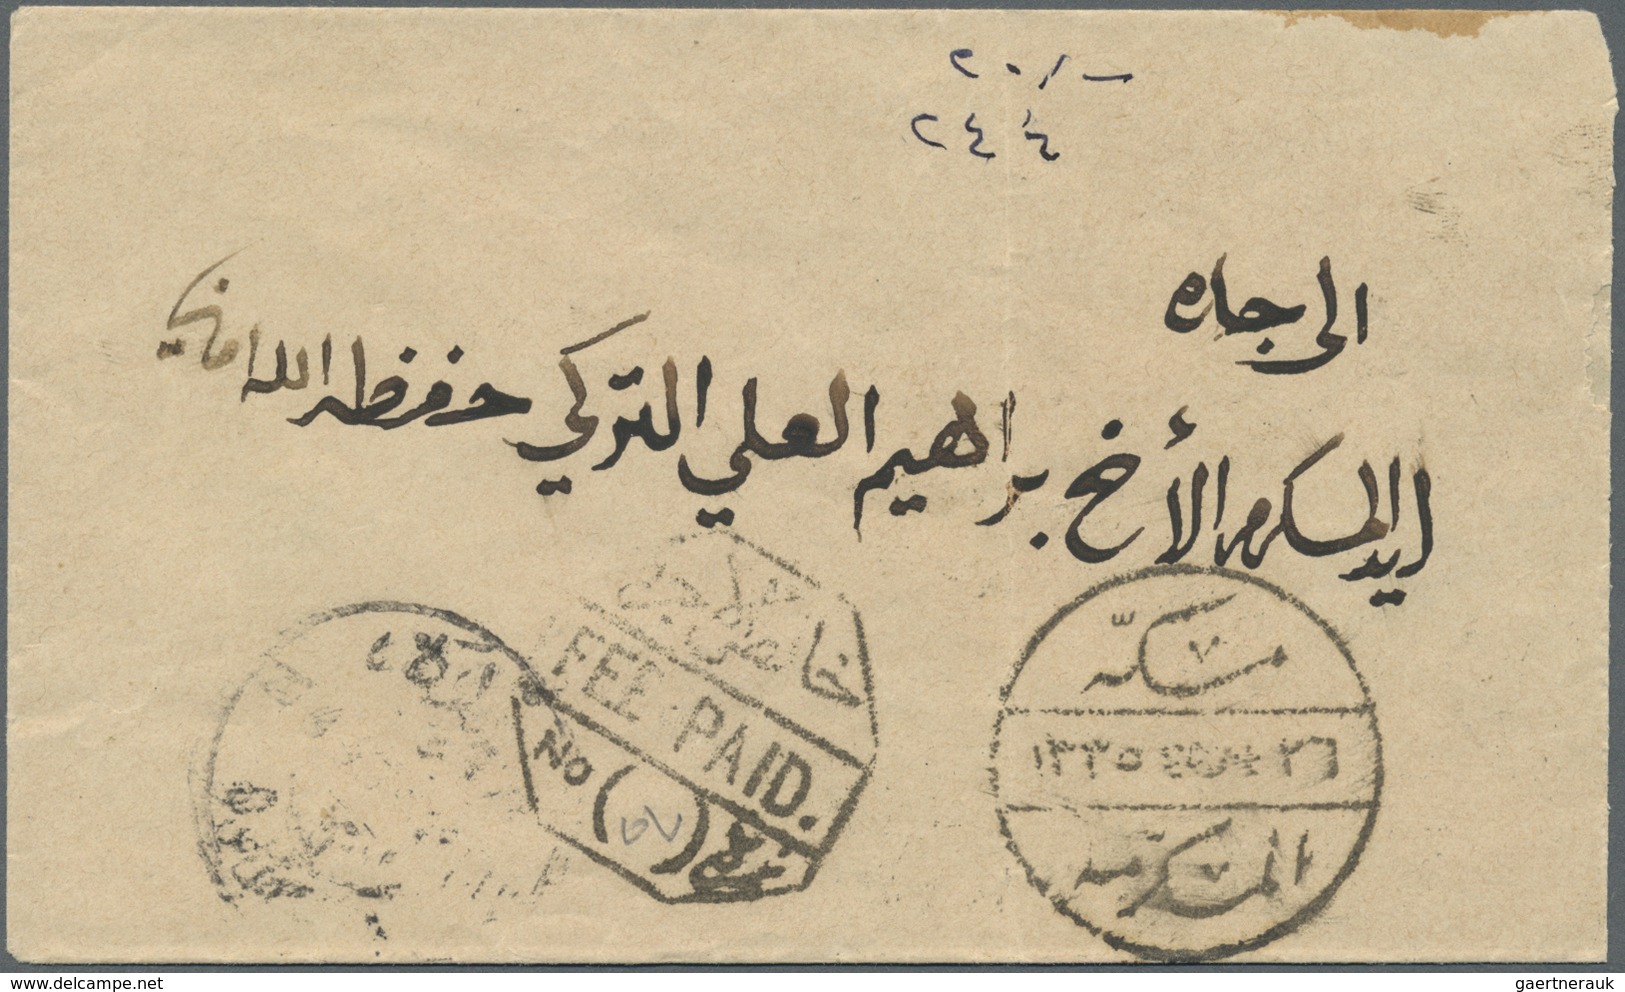 Br Saudi-Arabien - Stempel: 1916, Stampless Cover Tied By "MEKKE EL MUKEREME - 26/2/17- 1335" Cds. (Uex - Saoedi-Arabië